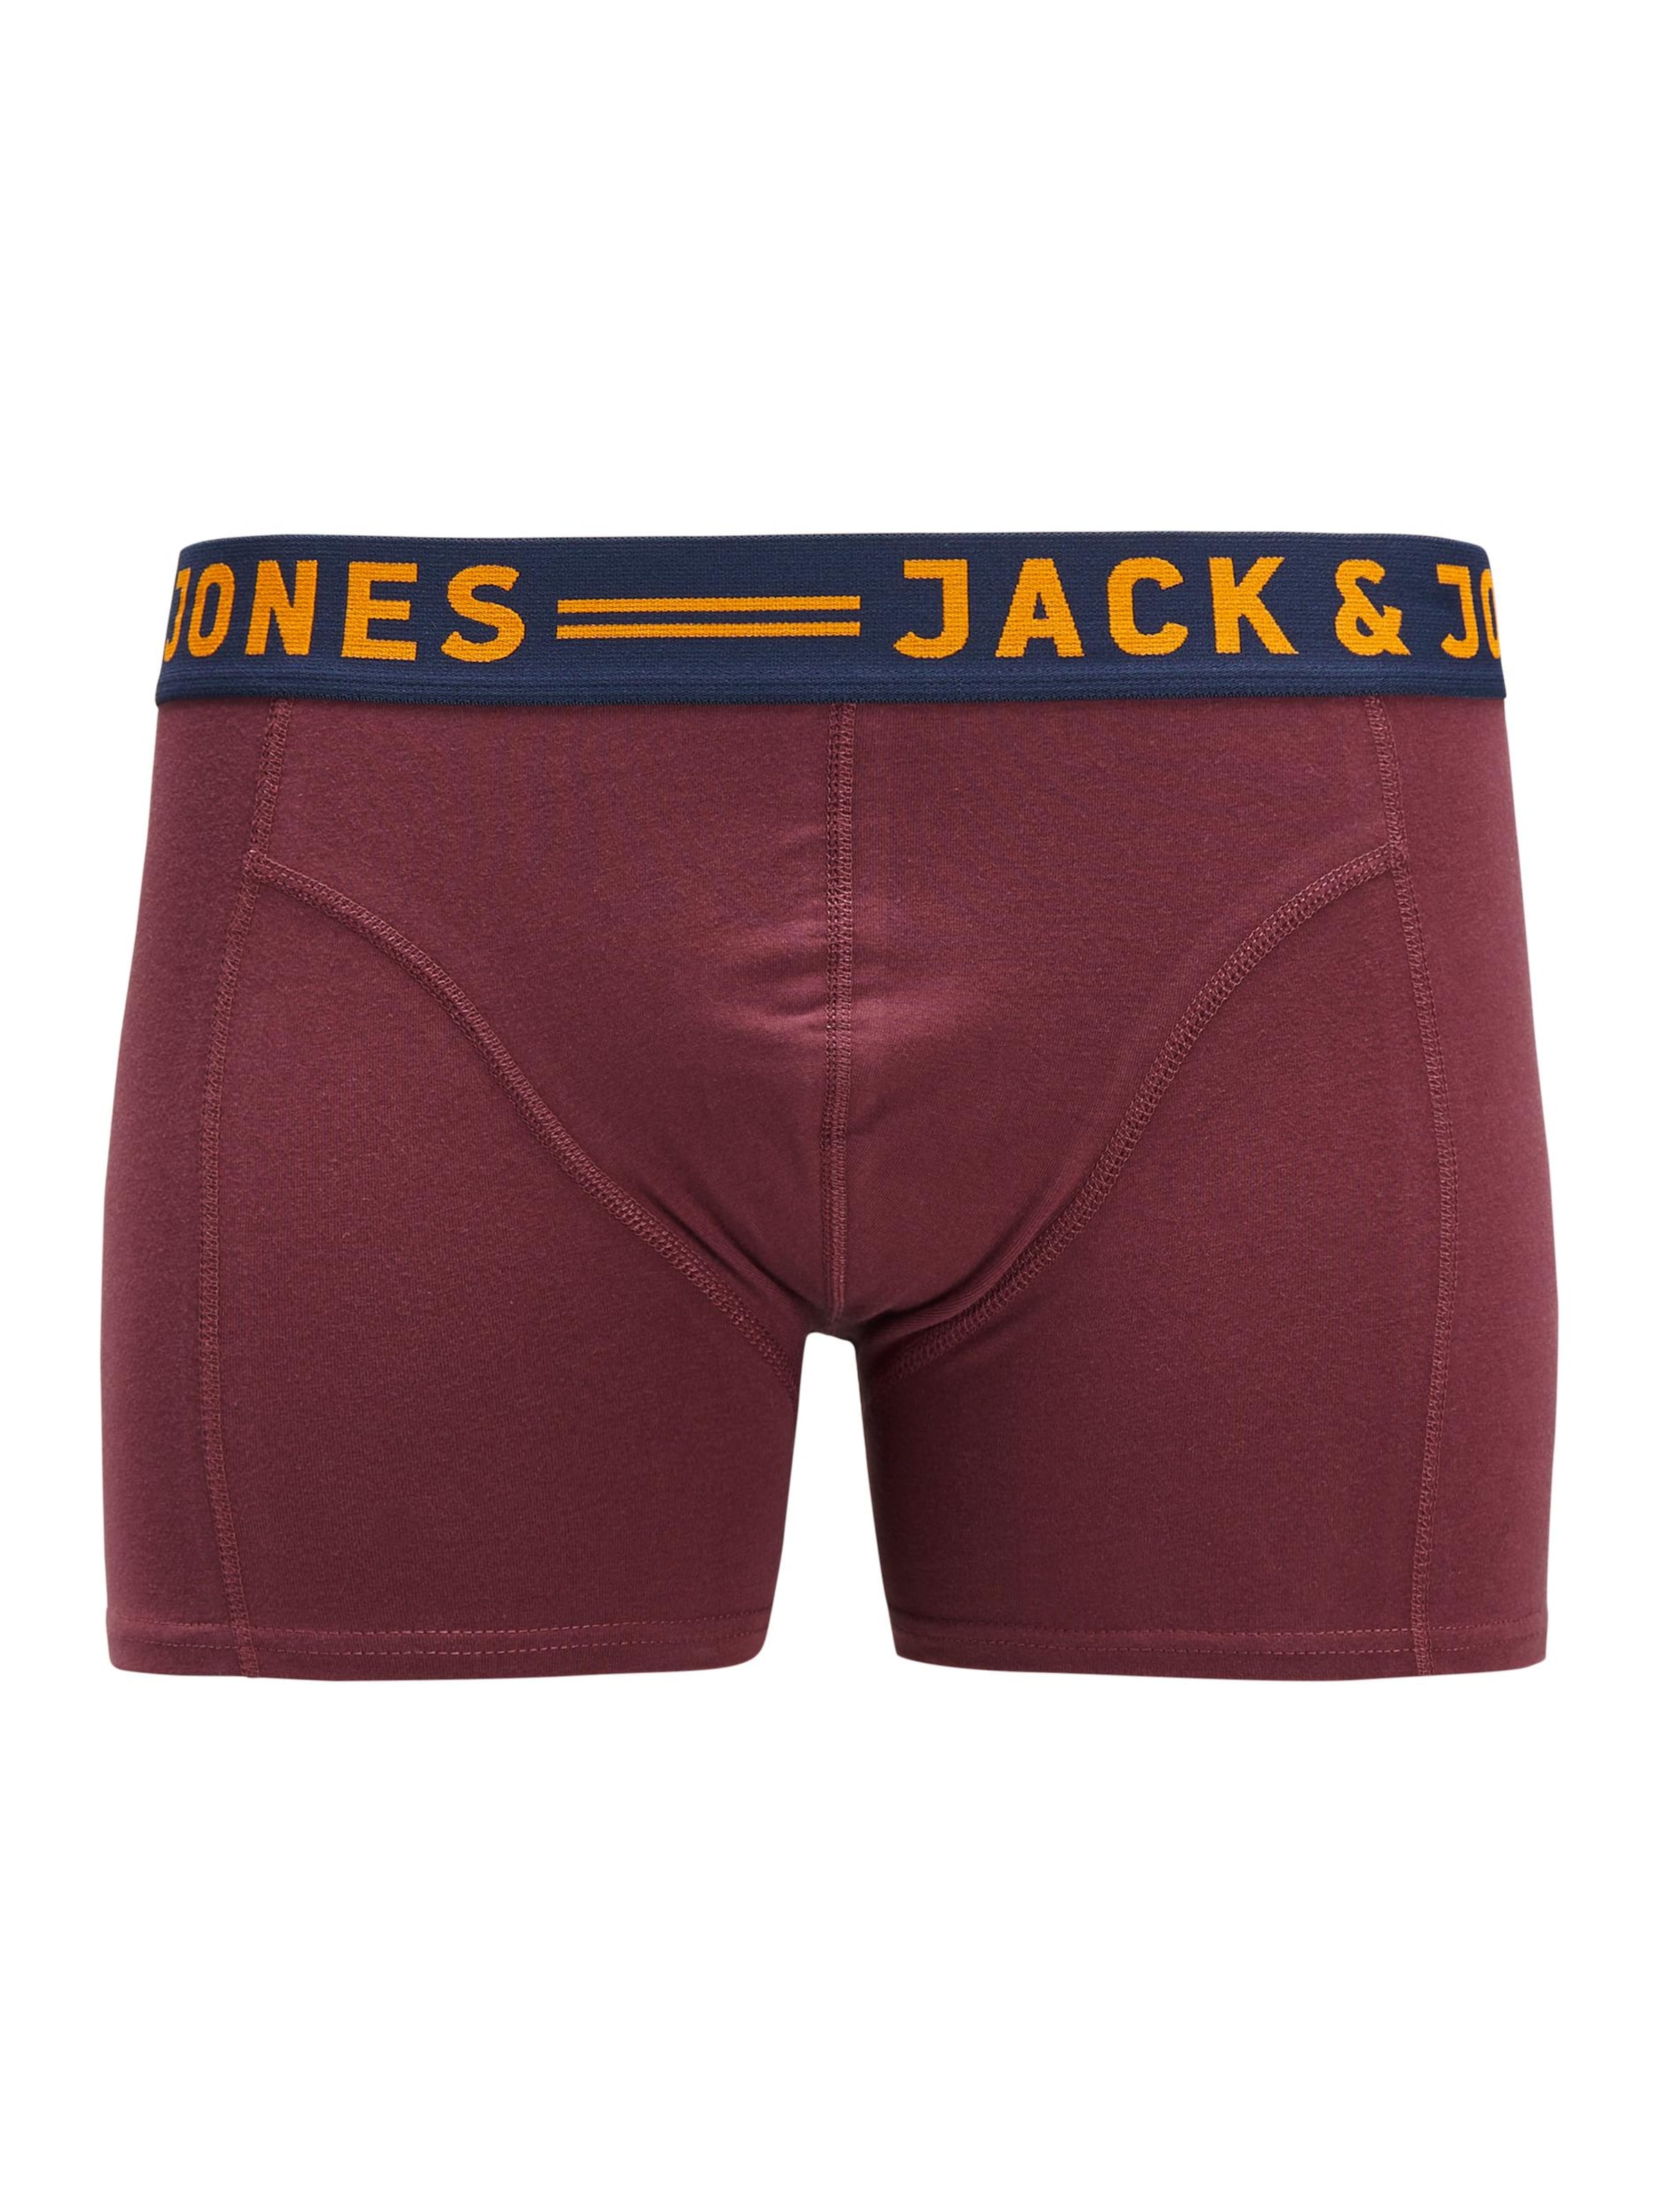 Sous-vêtements Boxers LICHFIELD JACK & JONES en Mélange De Couleurs 